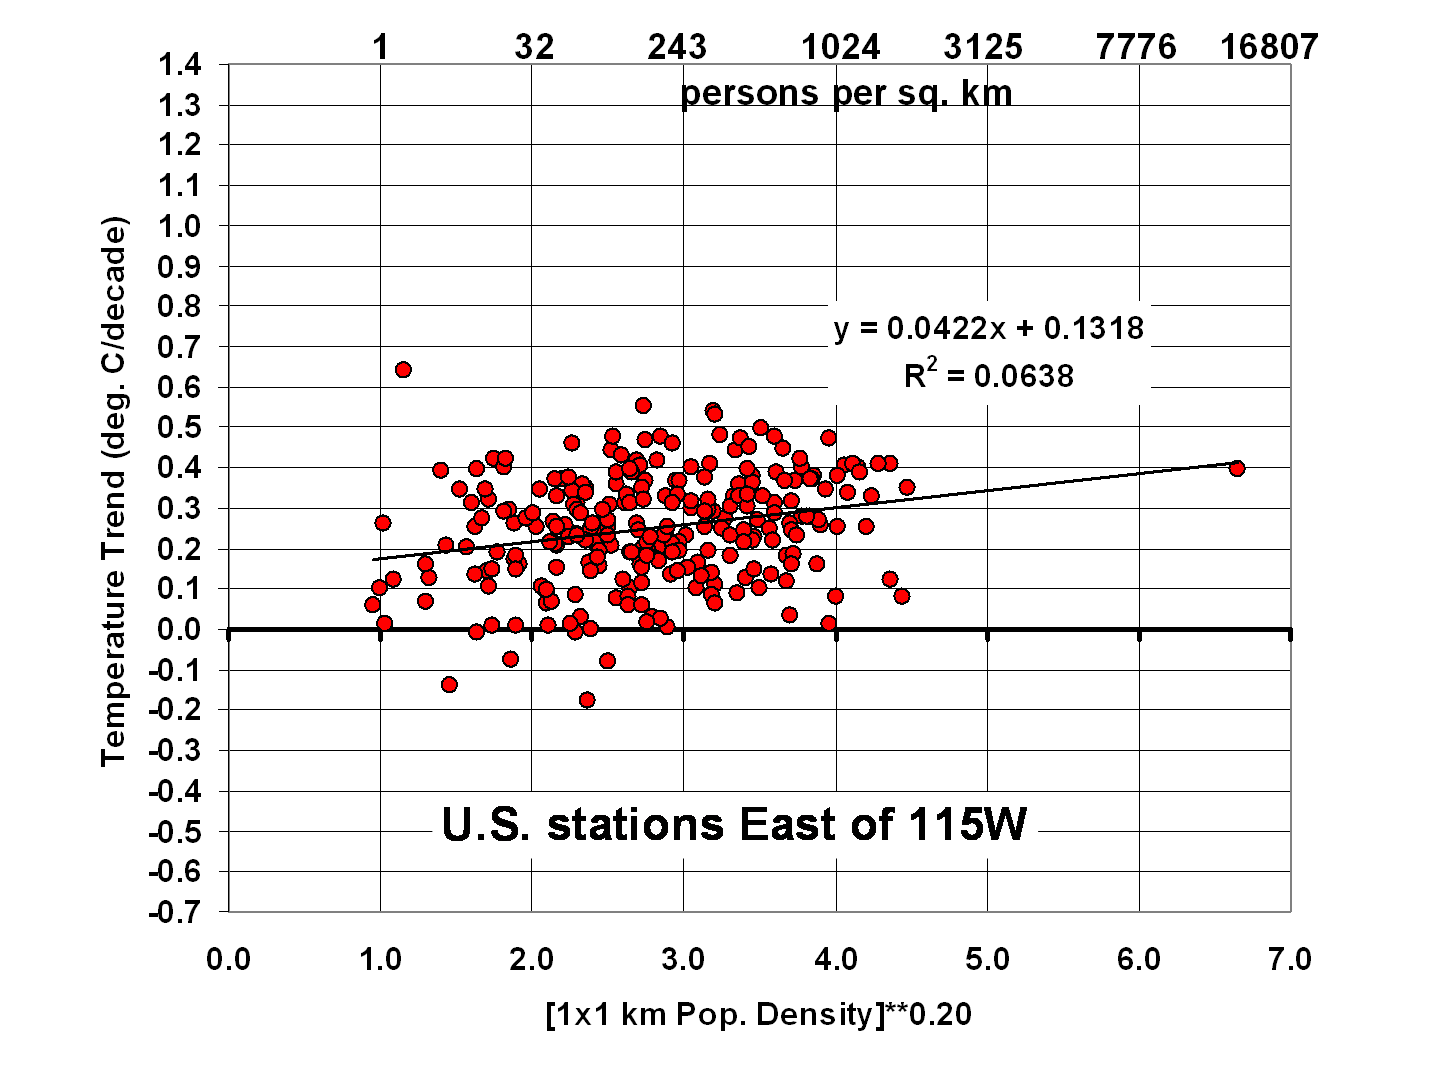 ISH-stn-trends-1973-2012-vs-population-density